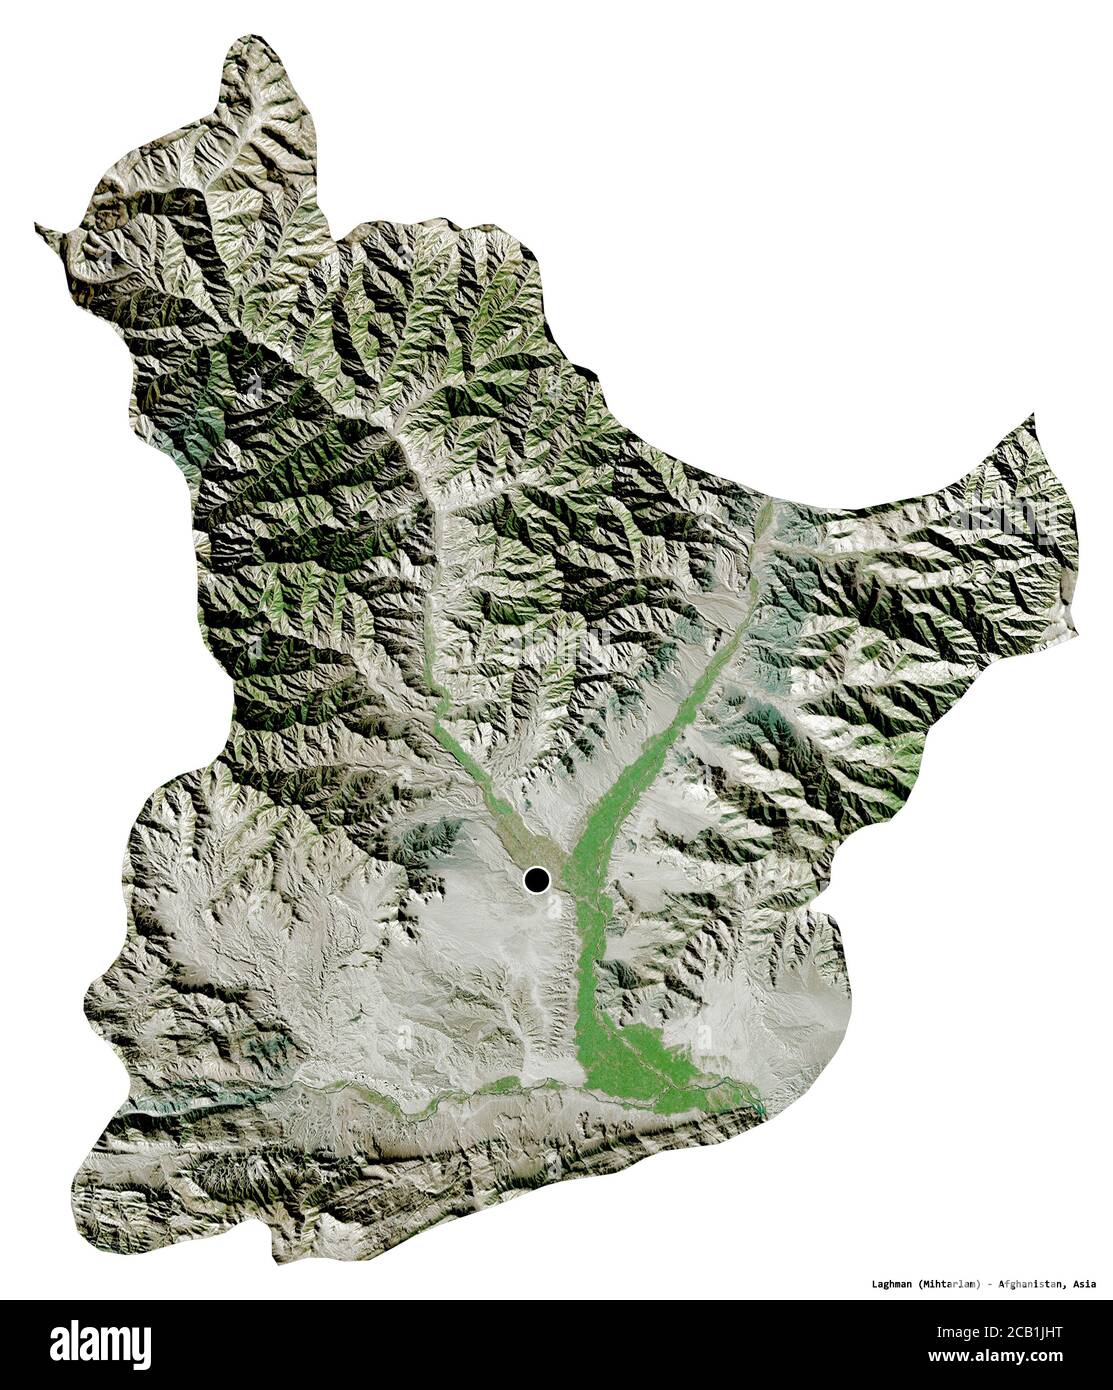 Forma di Laghman, provincia dell'Afghanistan, con la sua capitale isolata su sfondo bianco. Immagini satellitari. Rendering 3D Foto Stock